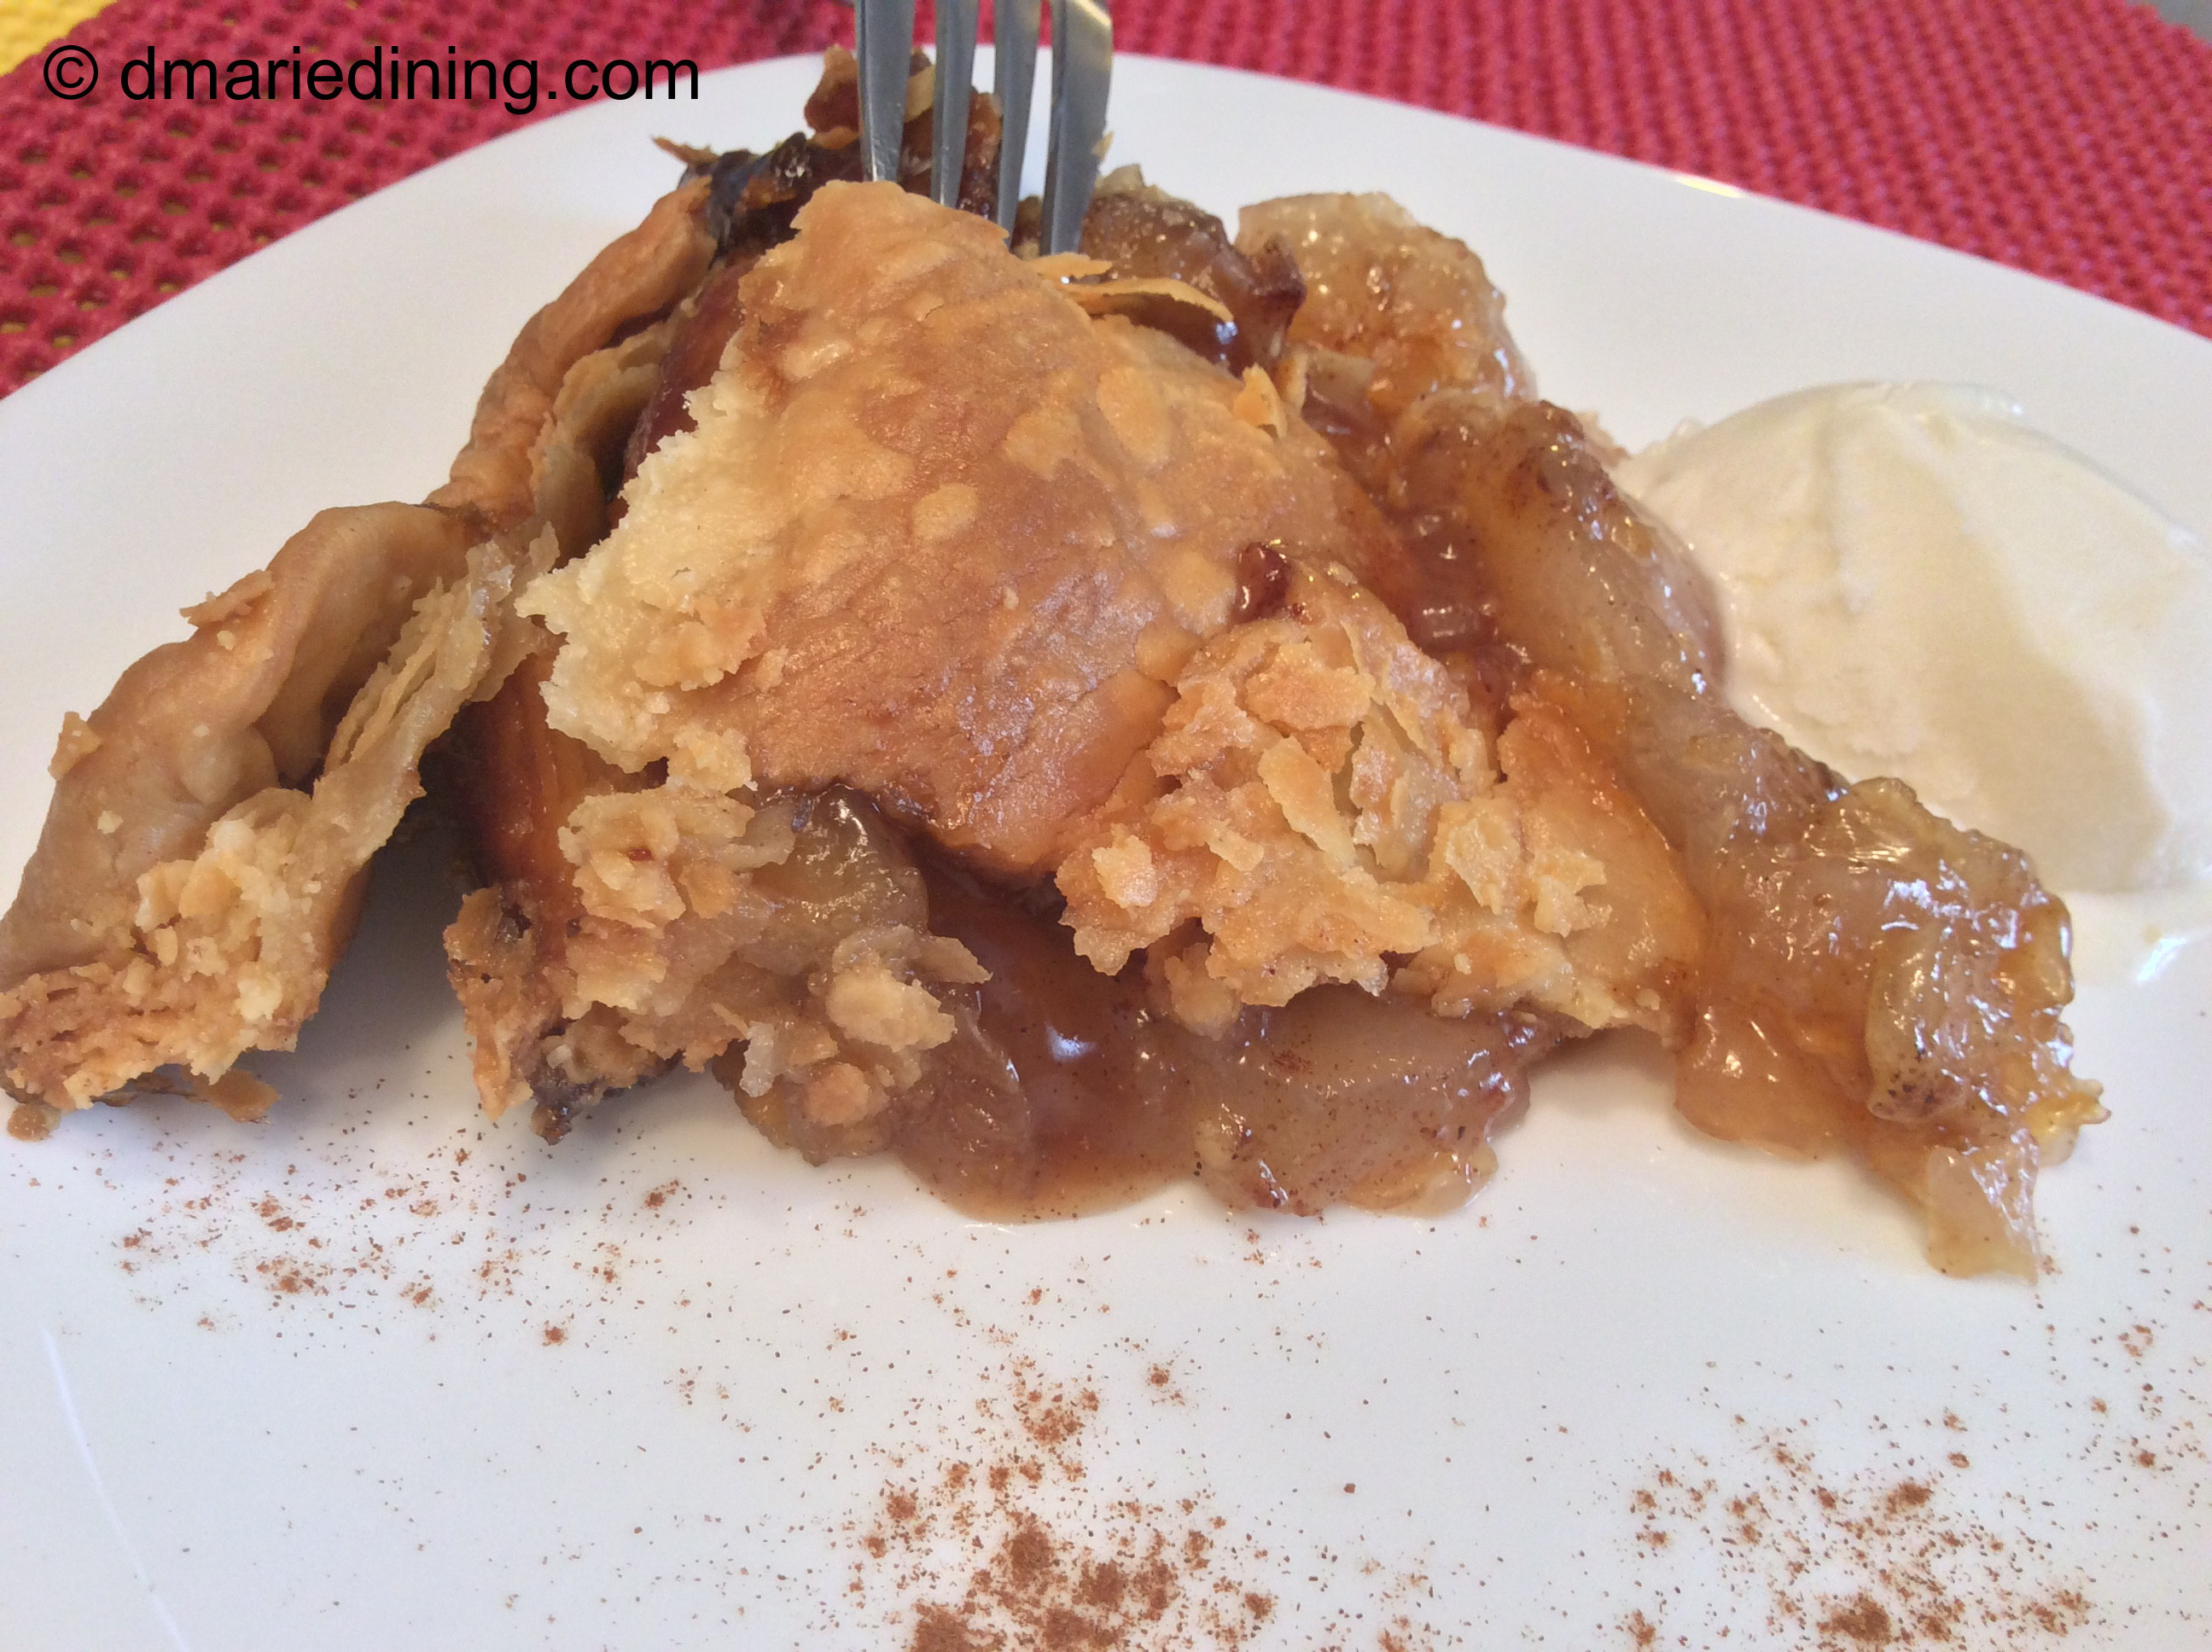 Trisha Yearwood Skillet Apple Pie
 Skillet Apple Pie Adapted from Trisha Yearwood’s recipe